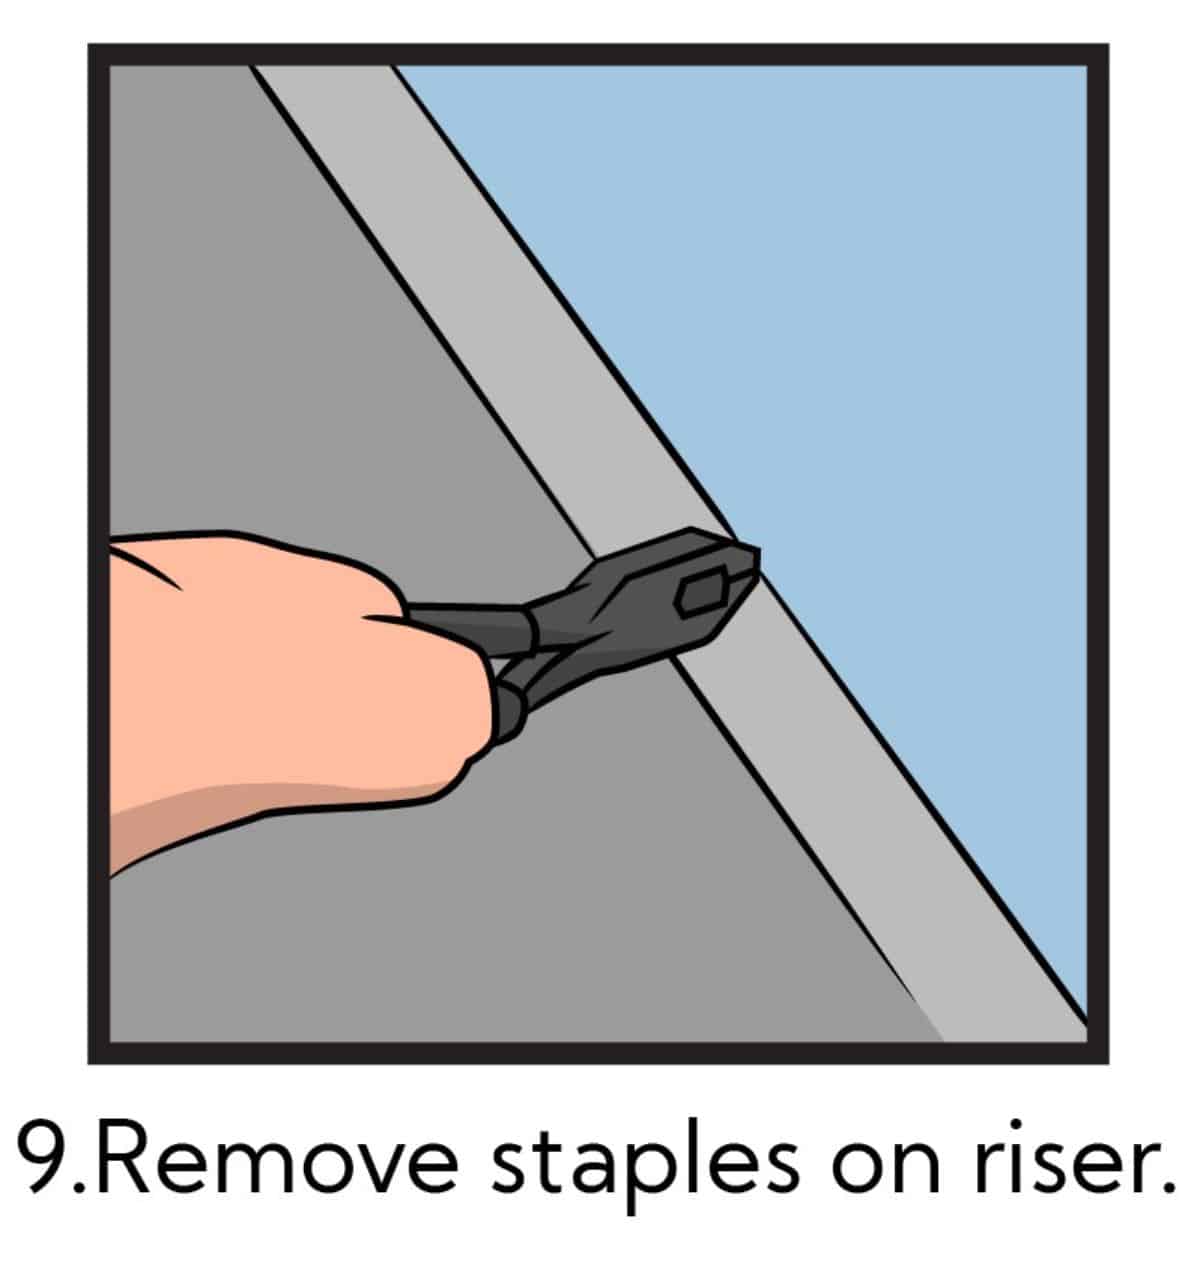 如何拆除楼梯地毯-第九步:拆除插销